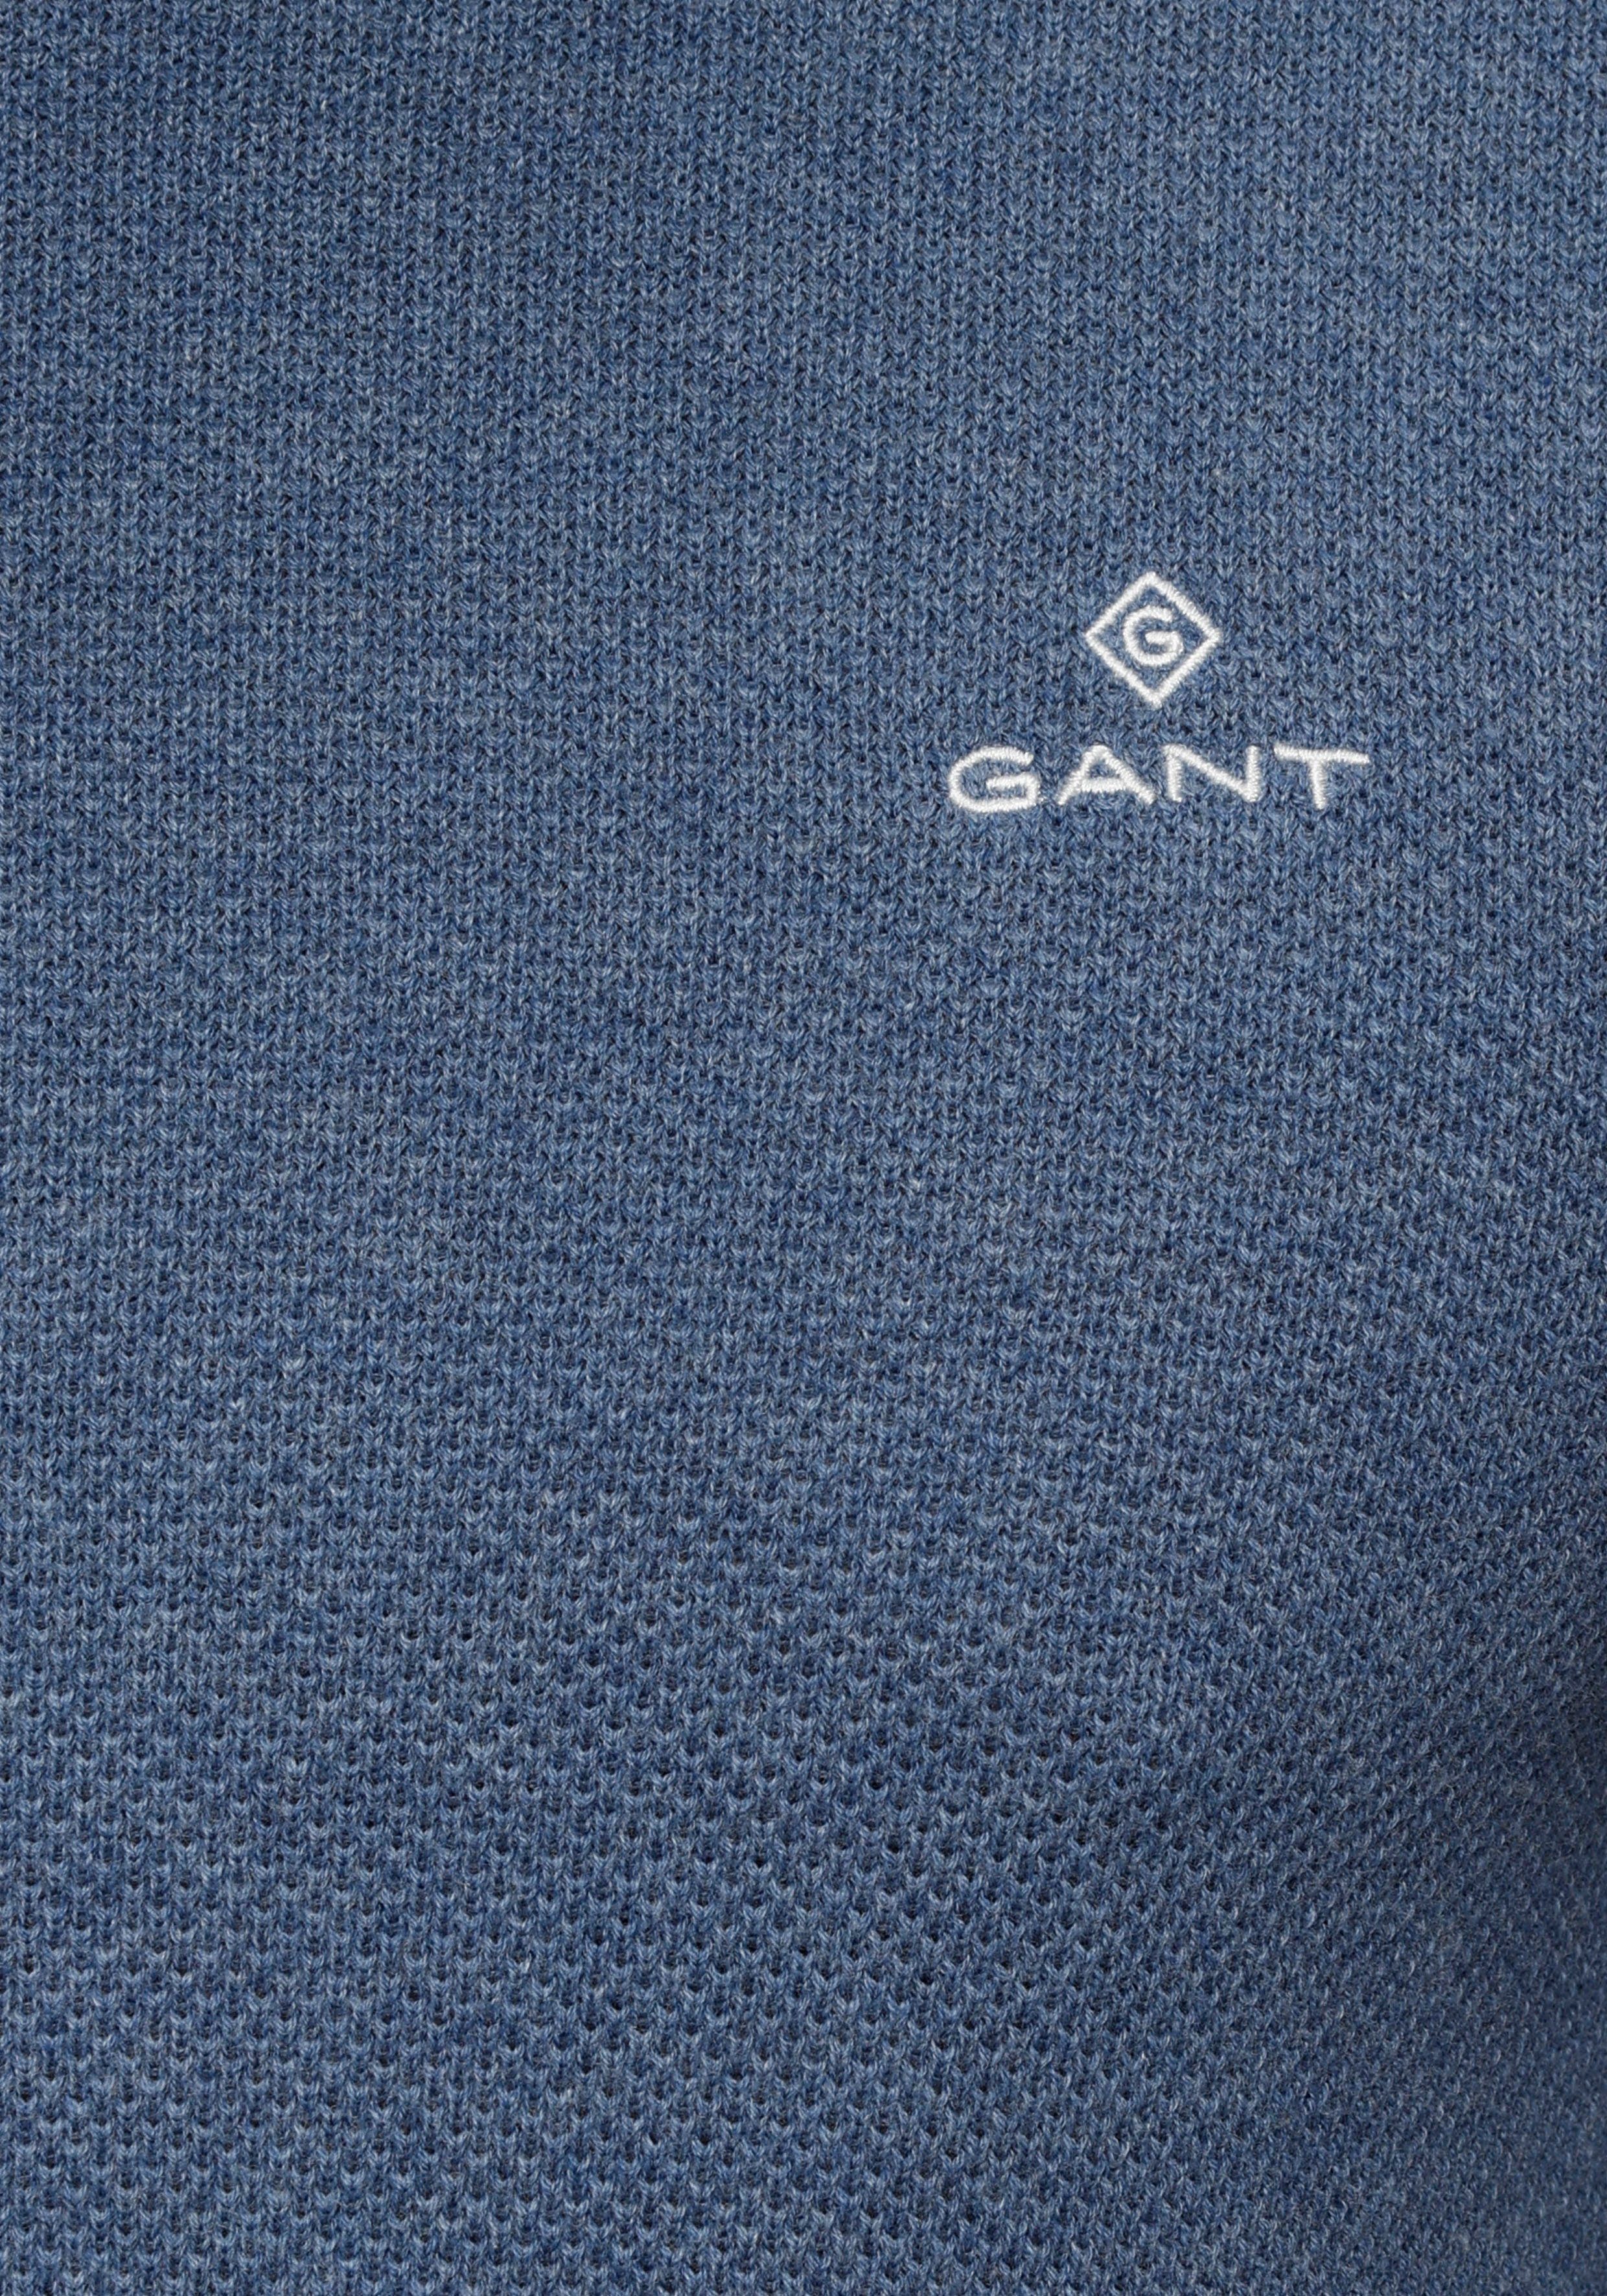 Gant aus denim PIQUE blue Rundhalspullover C-NECK melange COTTON Piqué-Strukturstrick